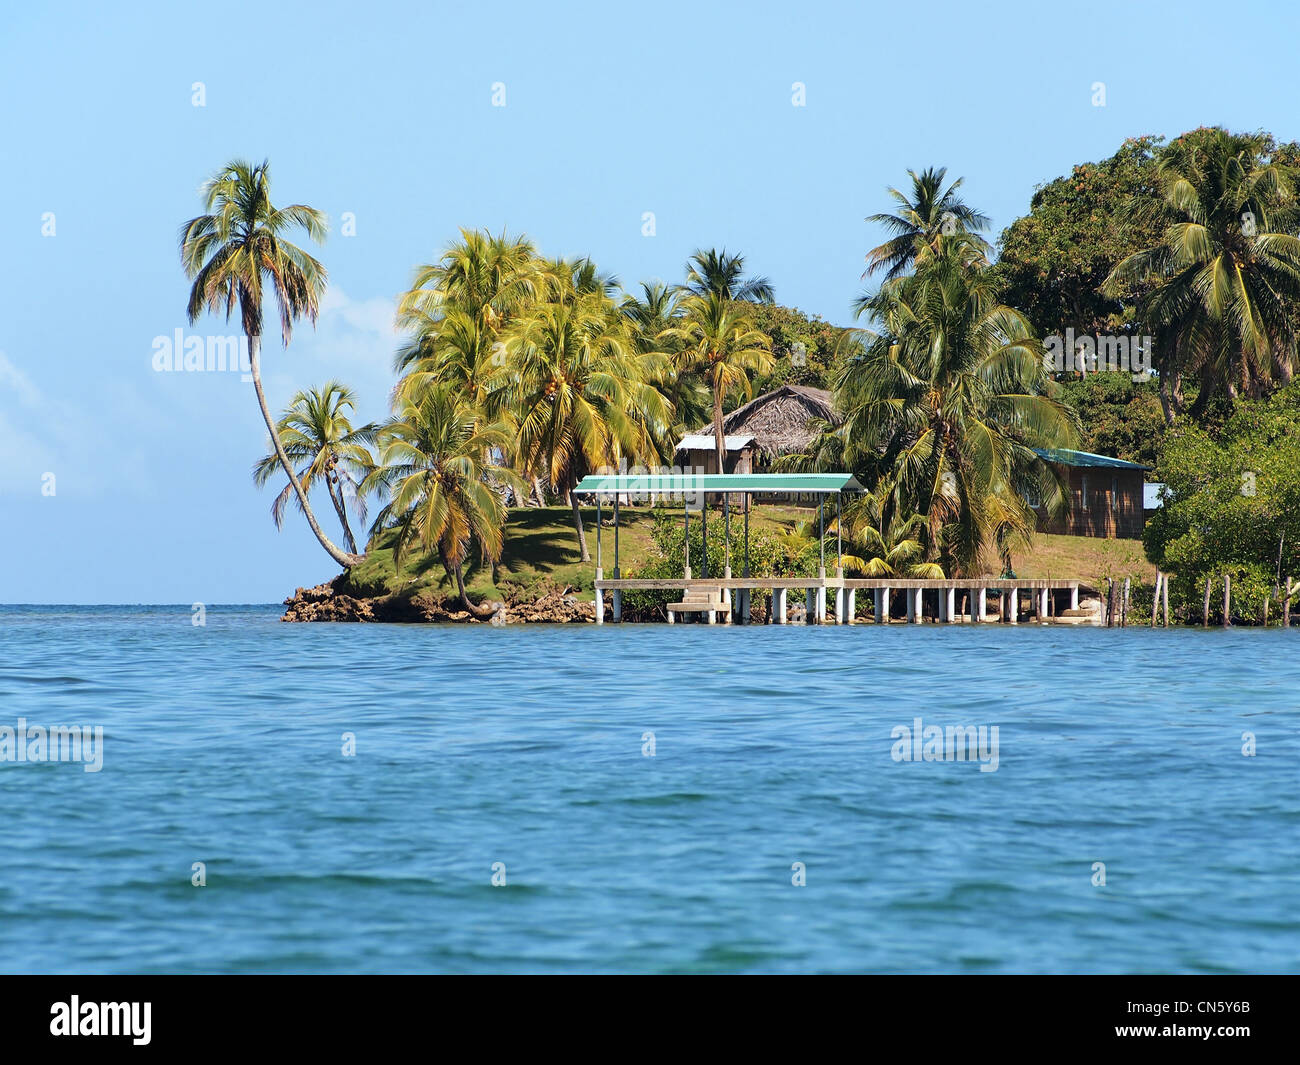 Isola tropicale con palme da cocco e un dock che conduce ad un piccolo villaggio, America Centrale, arcipelago di Bocas del Toro, Panama Foto Stock